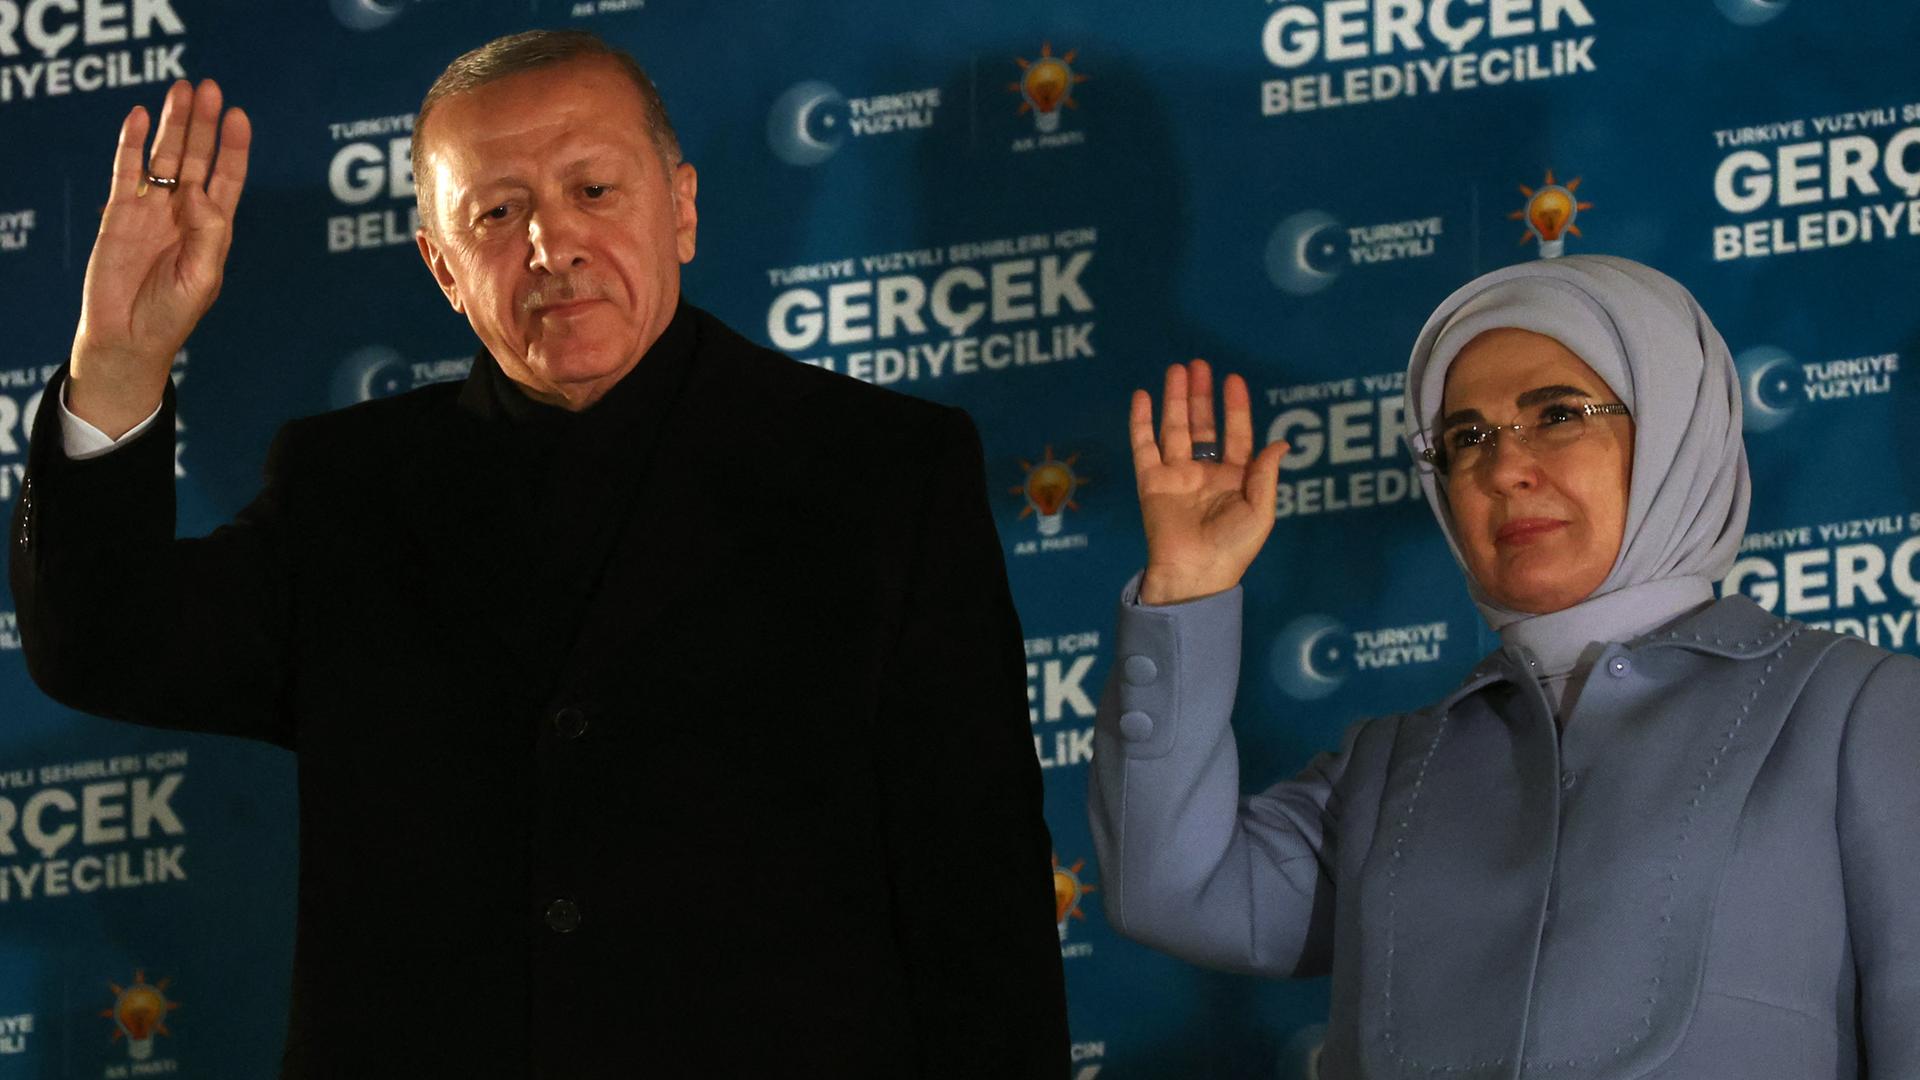 Der türkische Präsident Recep Tayyip Erdogan und seine Frau Emine Erdogan nach den Kommunalwahlen in der AKP-Zentrale in Ankara